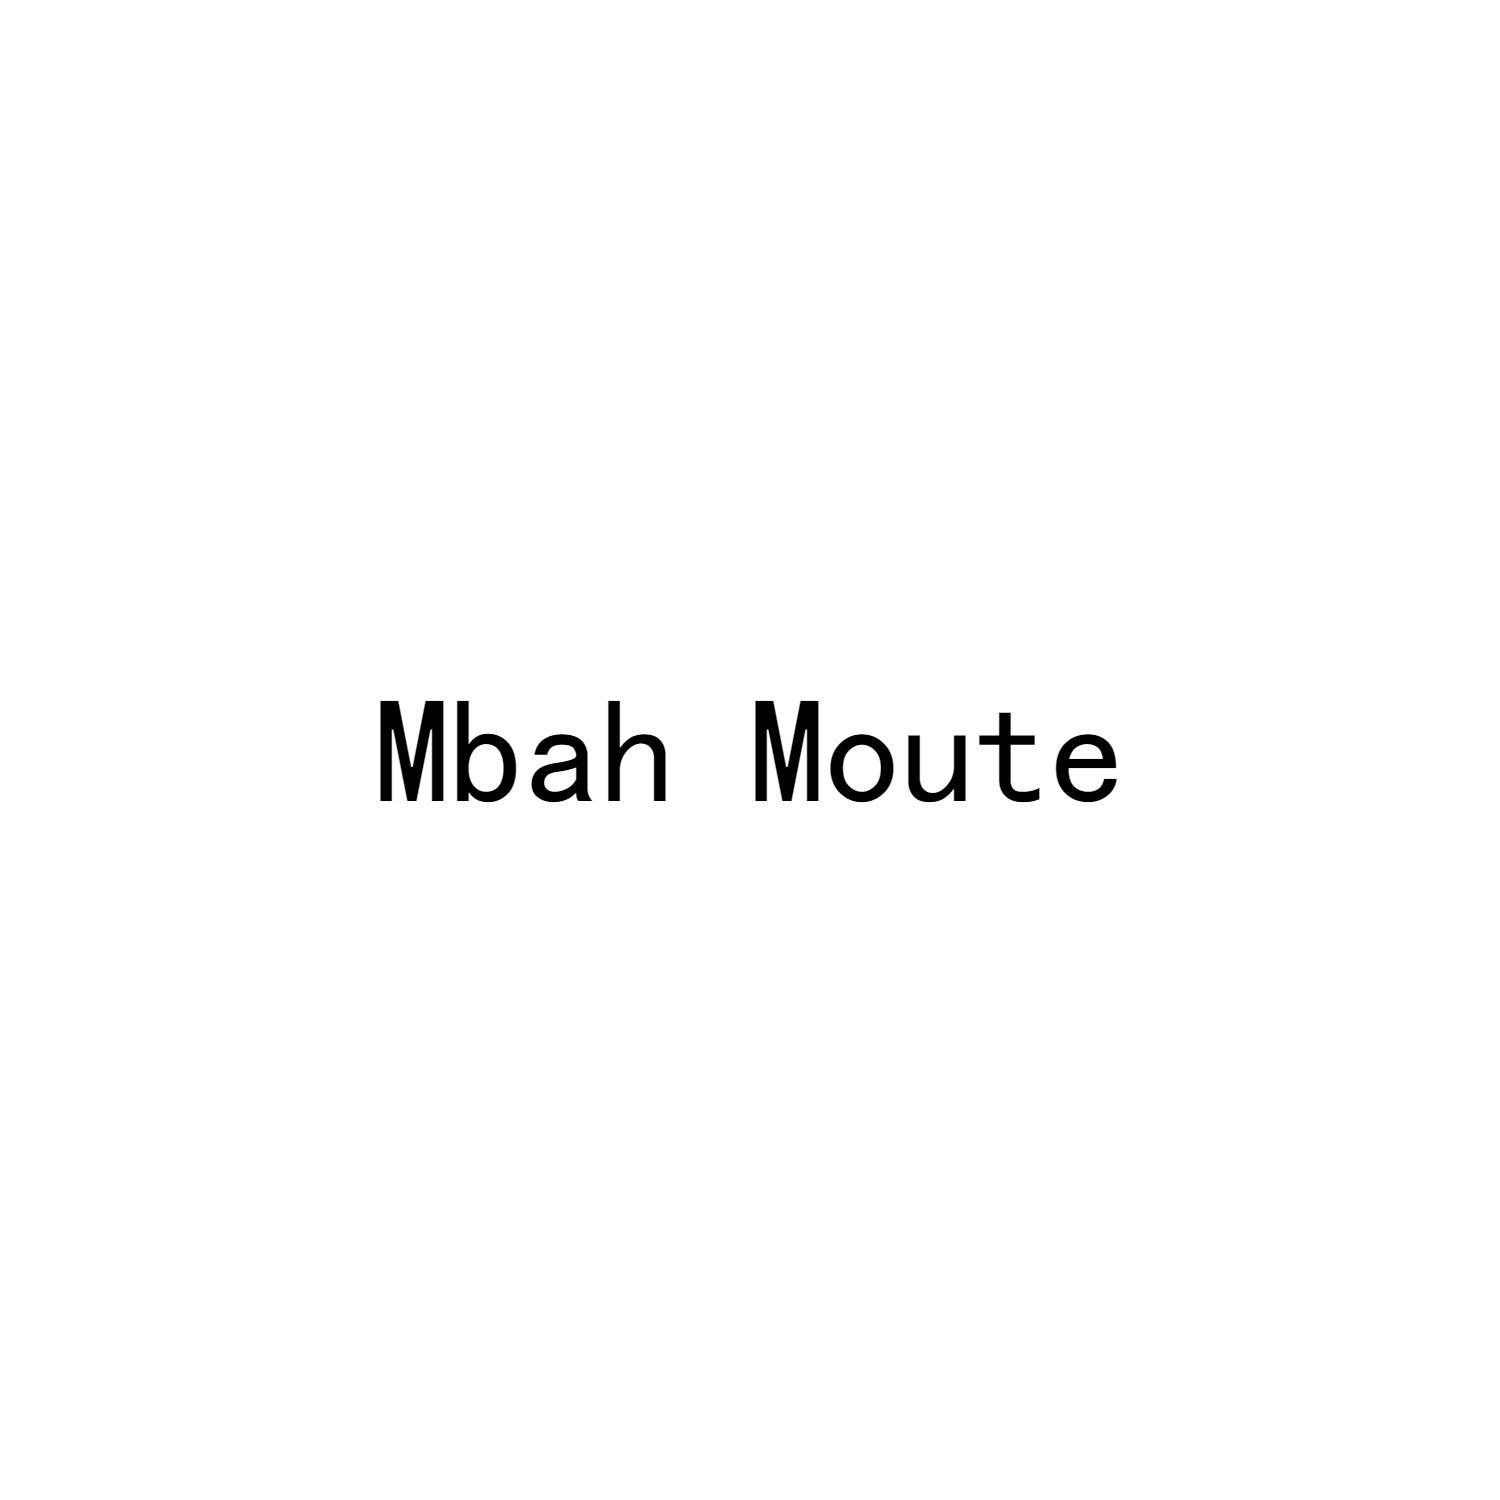 MBAH MOUTE